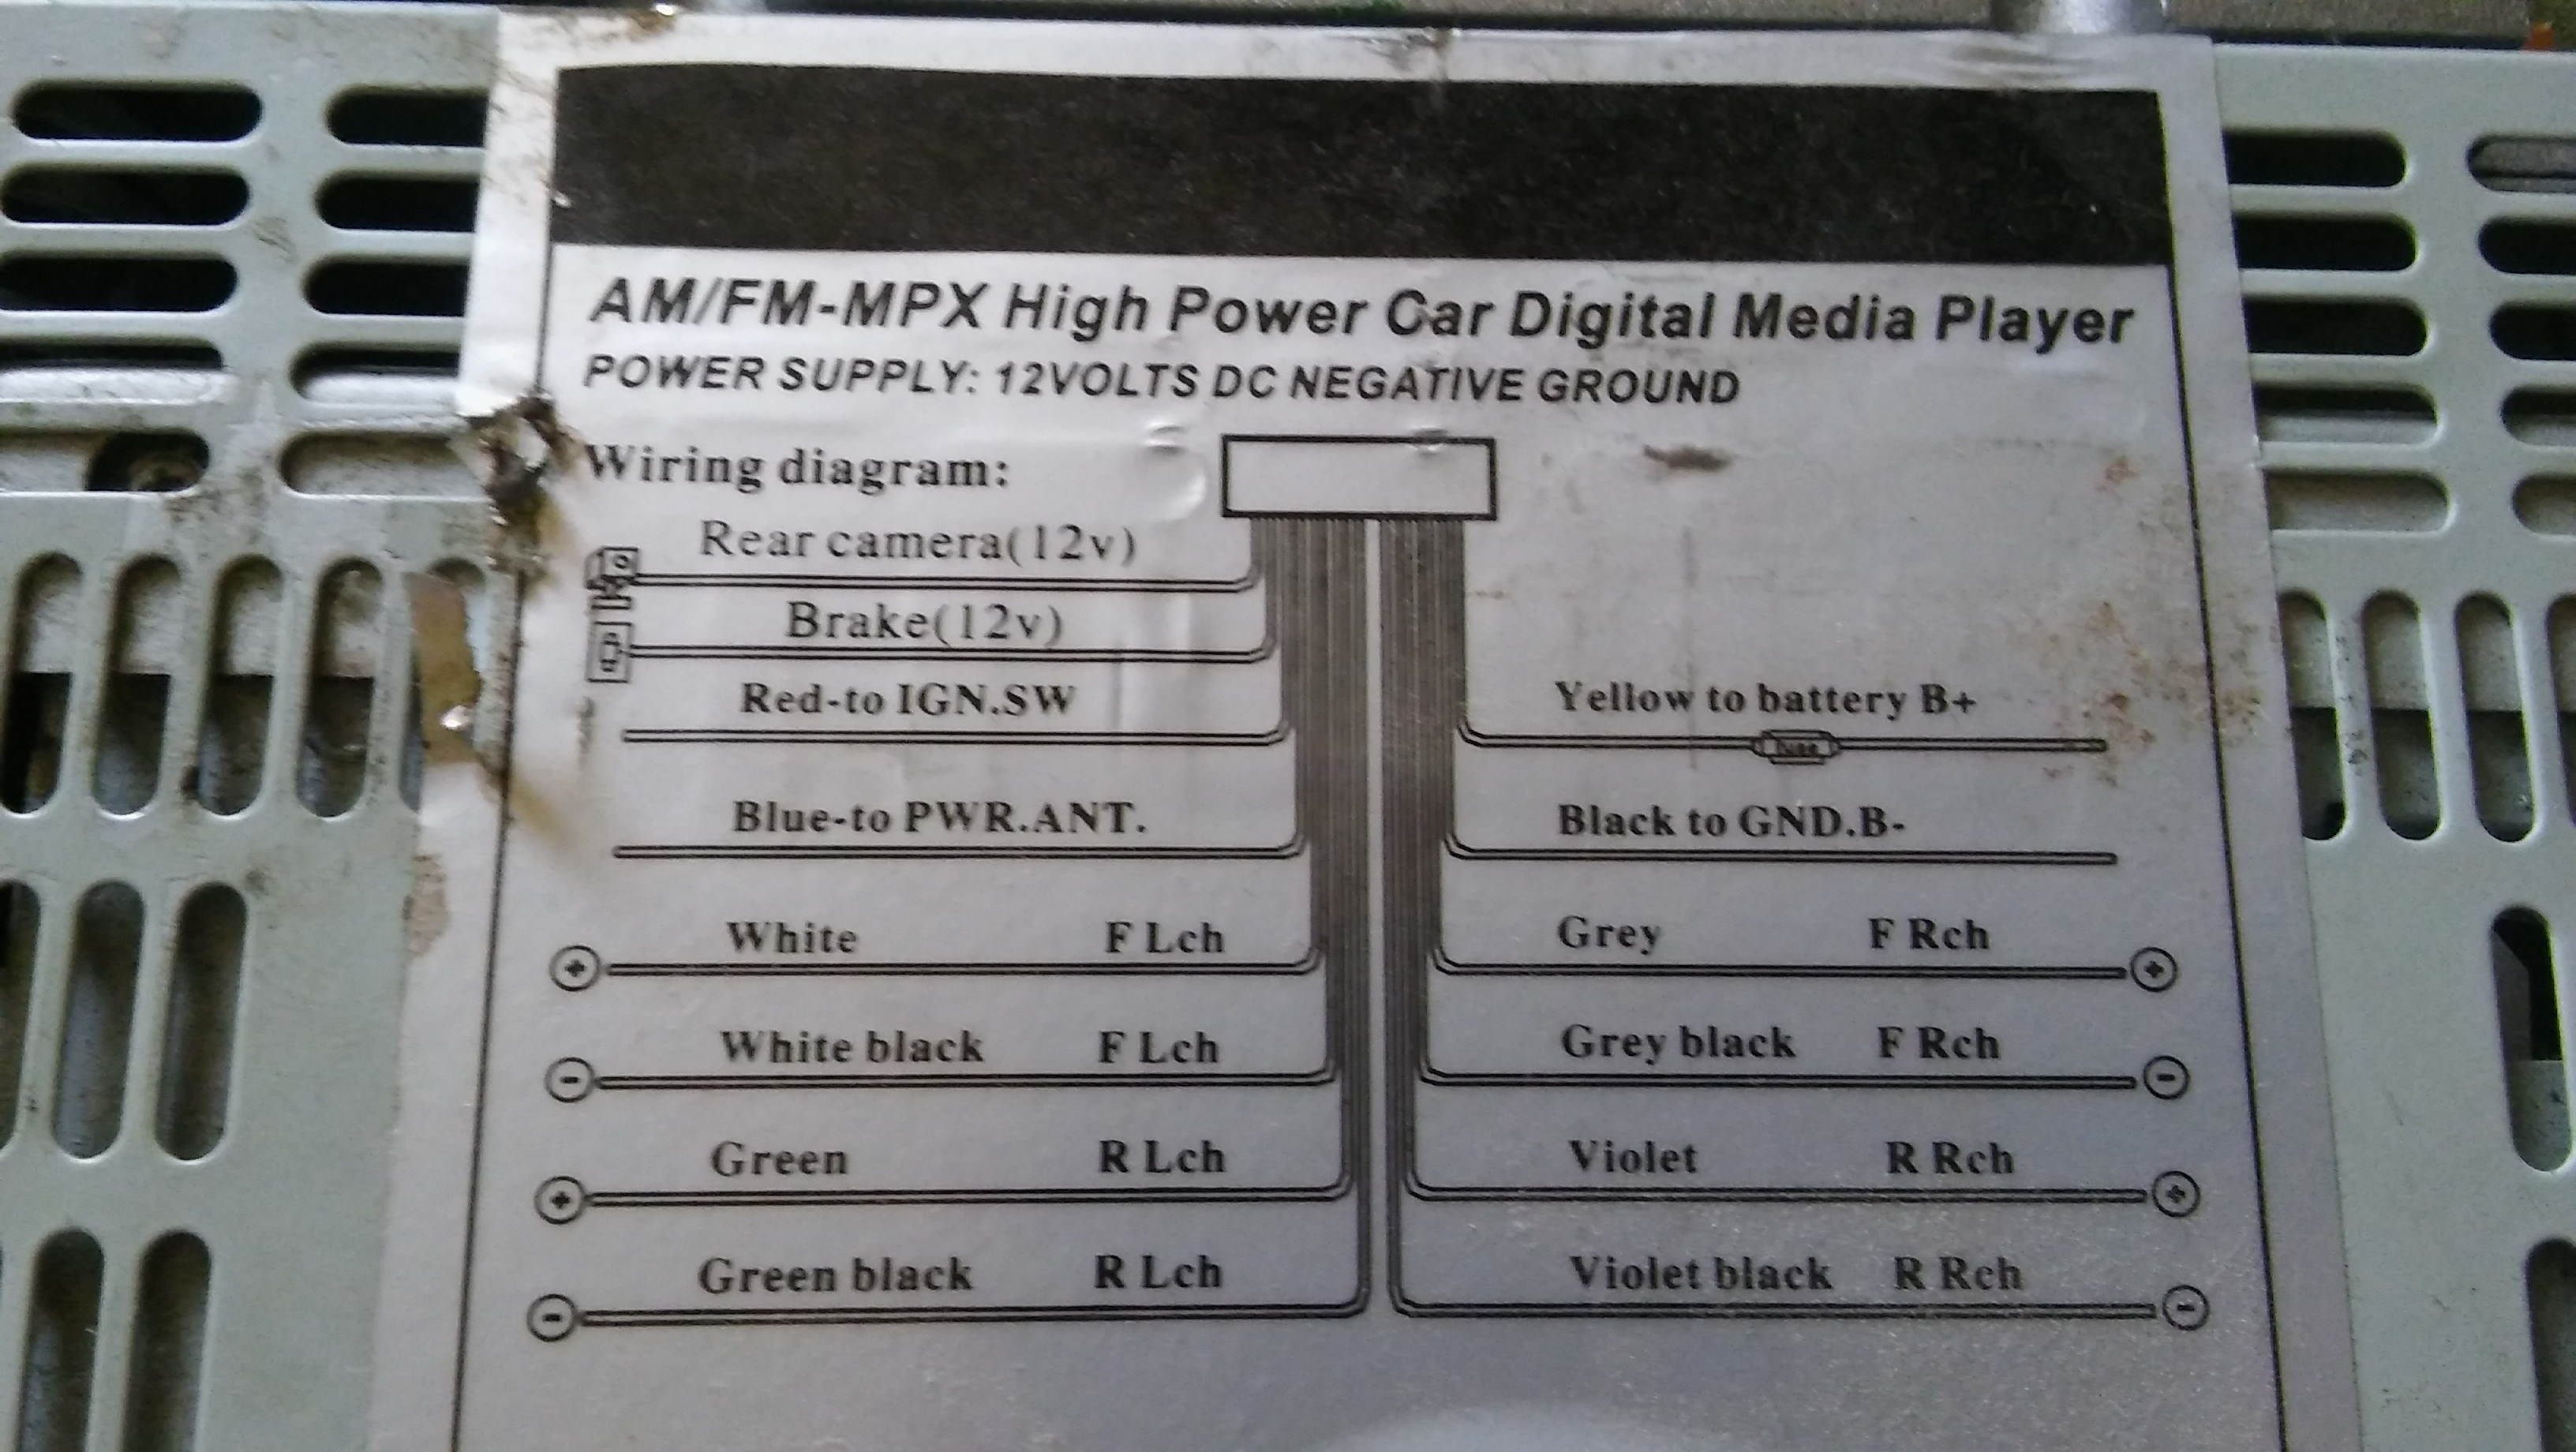 Am Fm-mpx High Power Car Digital Media Player